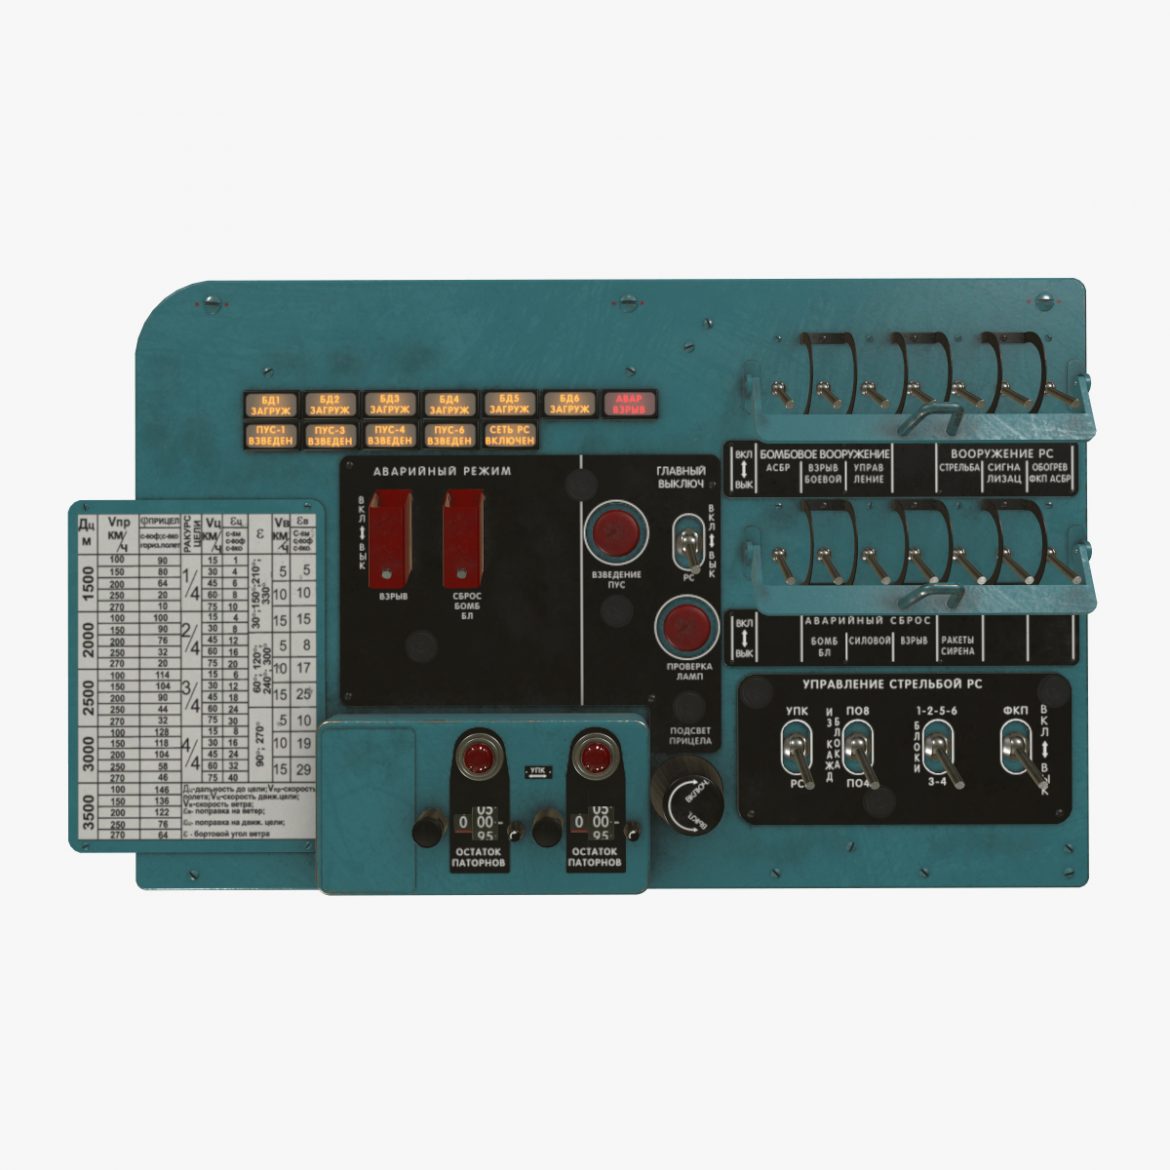 mi-8mt mi-17mt left circuit console russian 3d model 3ds max fbx obj 301705